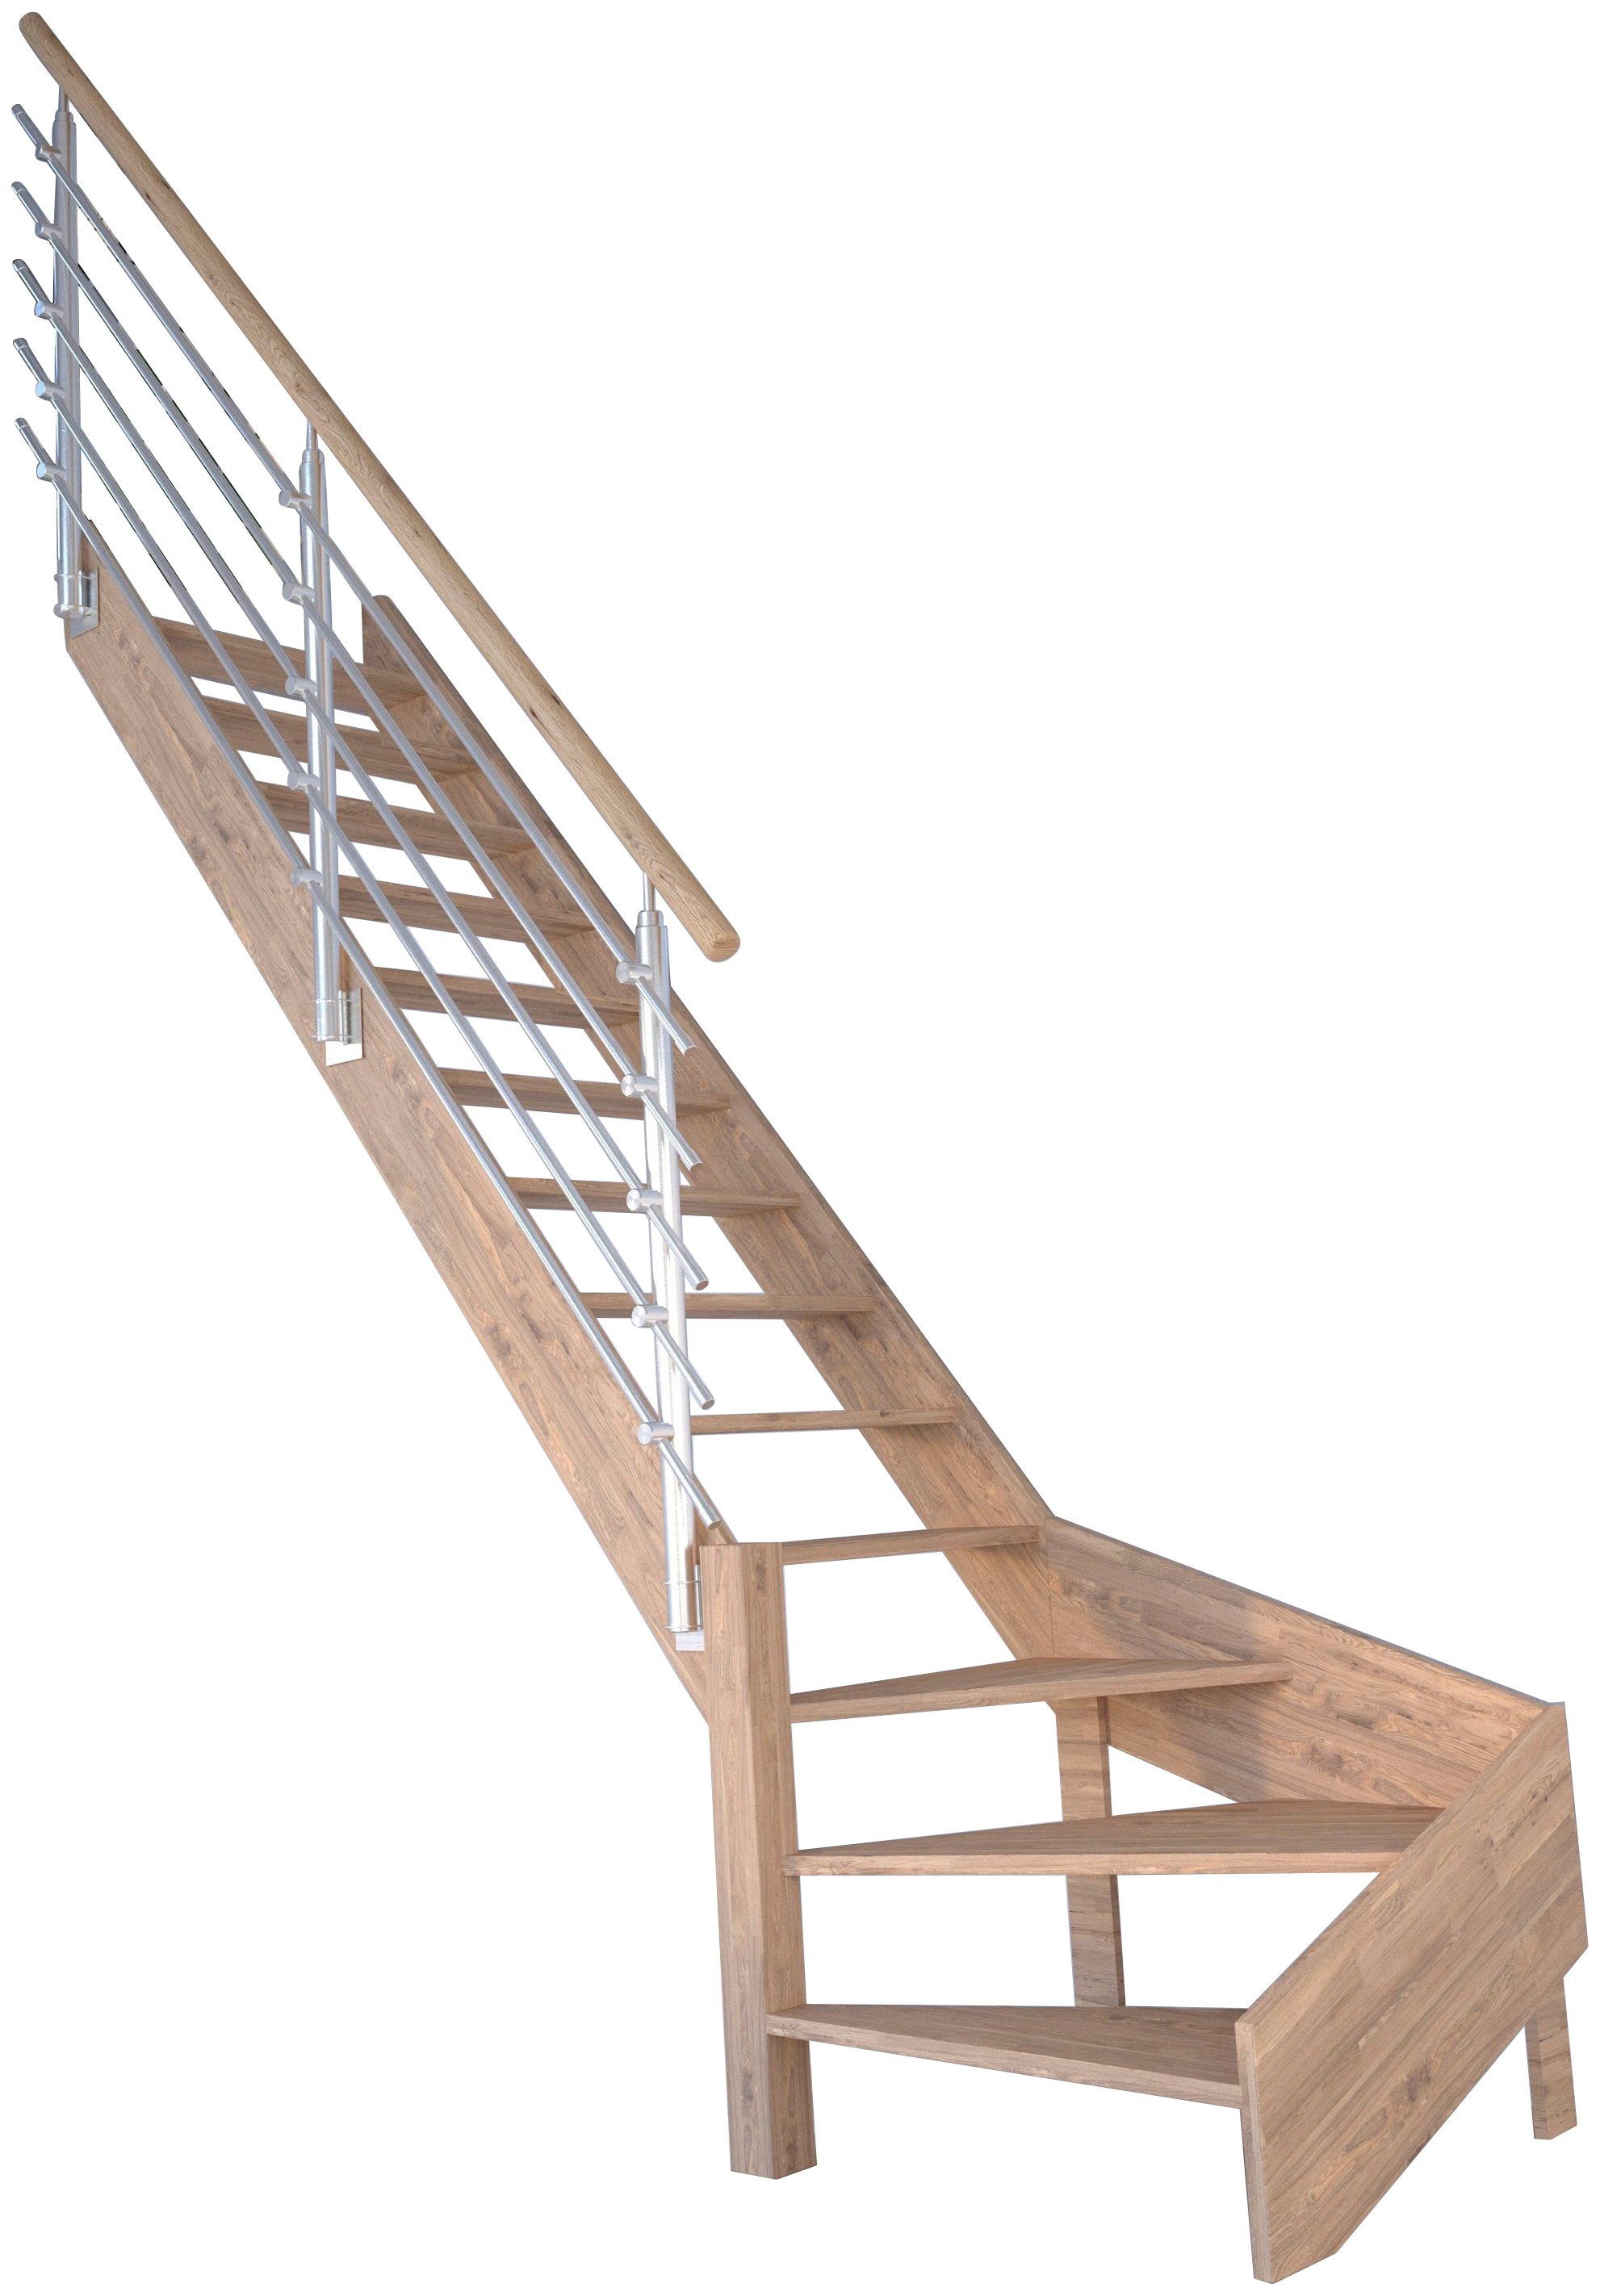 Design-Geländer Raumspartreppe Massivholz für 300 cm, offen, Geschosshöhen Edelstahl, Rhodos, Starwood gewendelt Wangenteile bis Durchgehende Stufen Links,